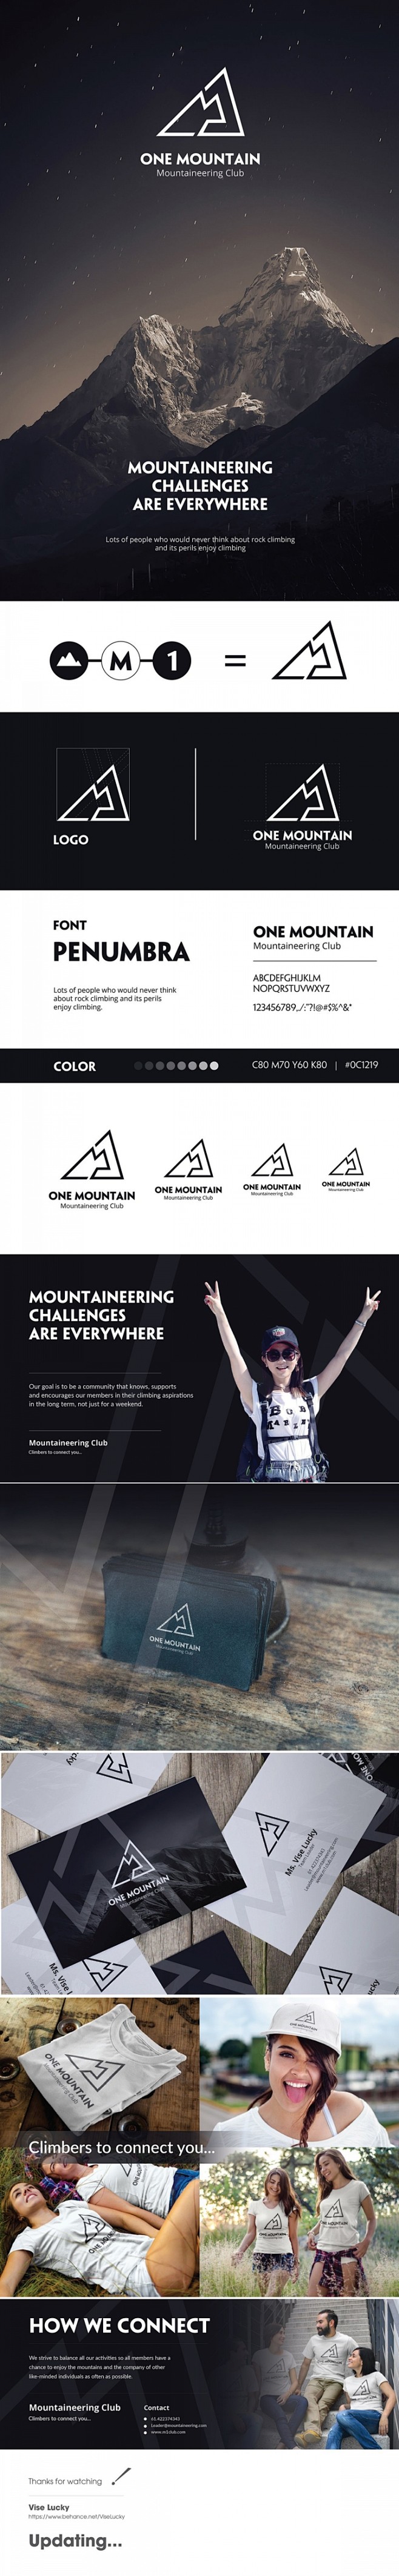 M1登山俱乐部品牌形象设计 设计圈 展示...